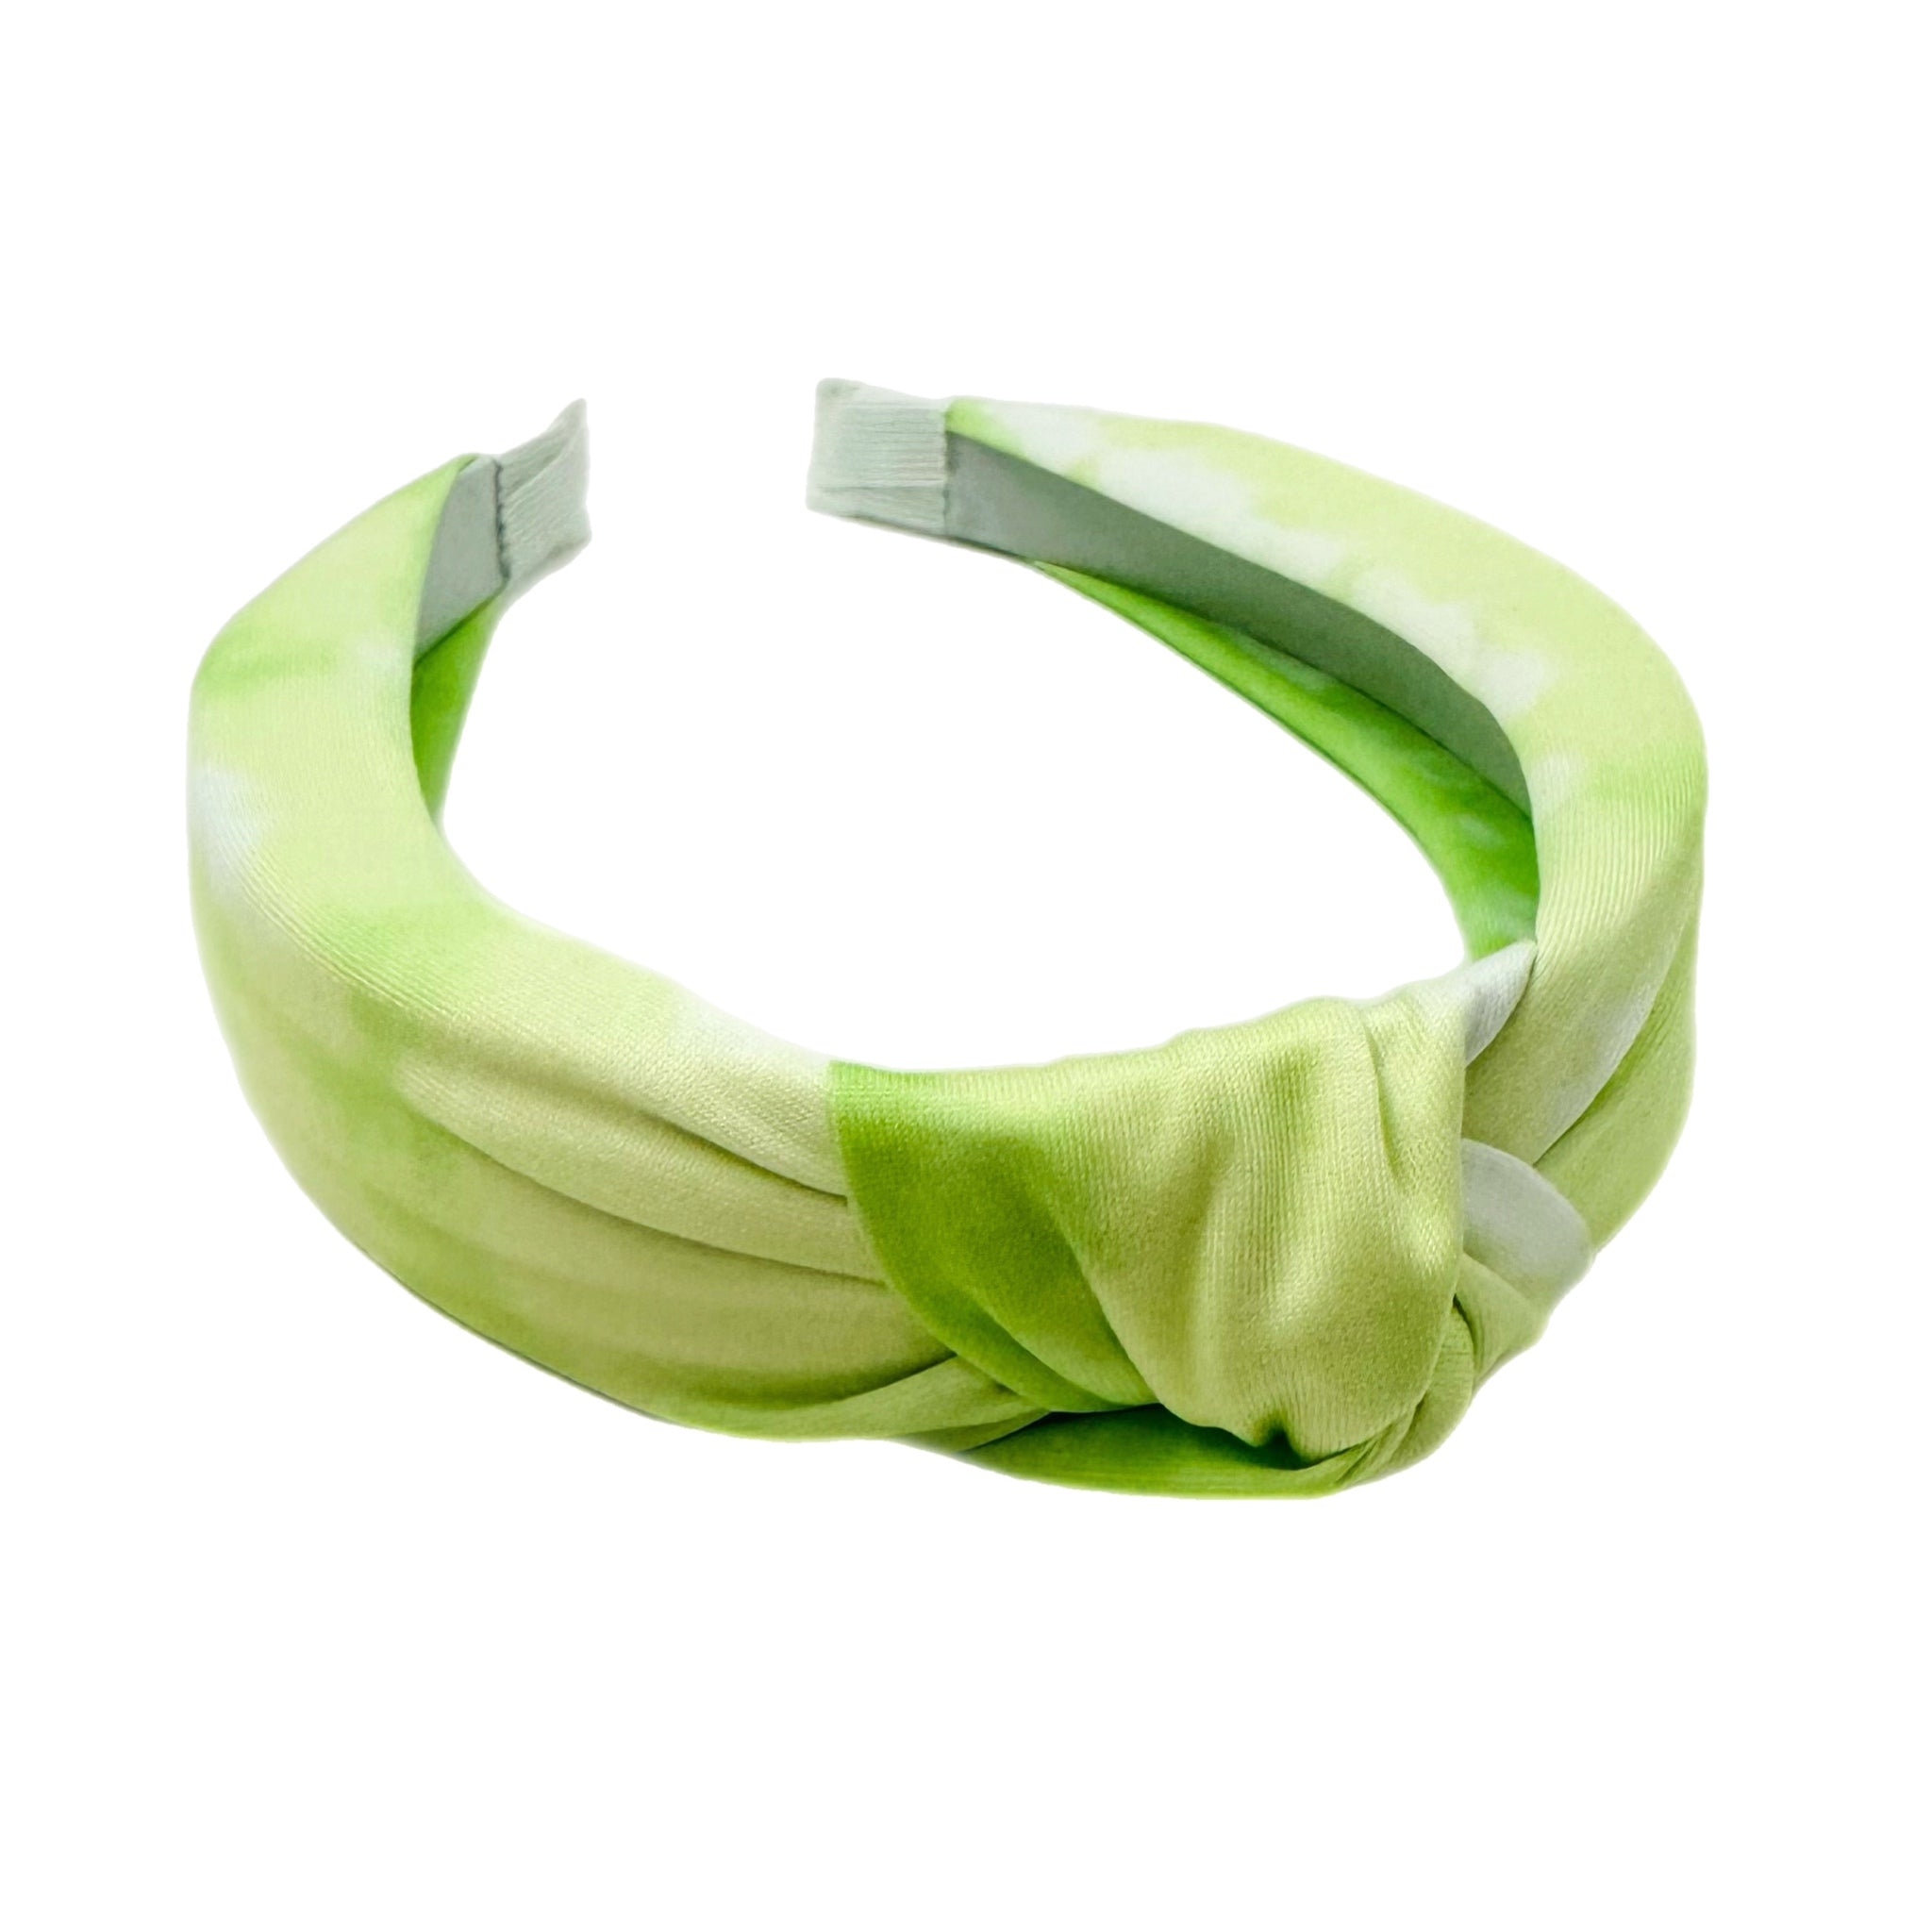 Green Tye-Dye Knotted Headband